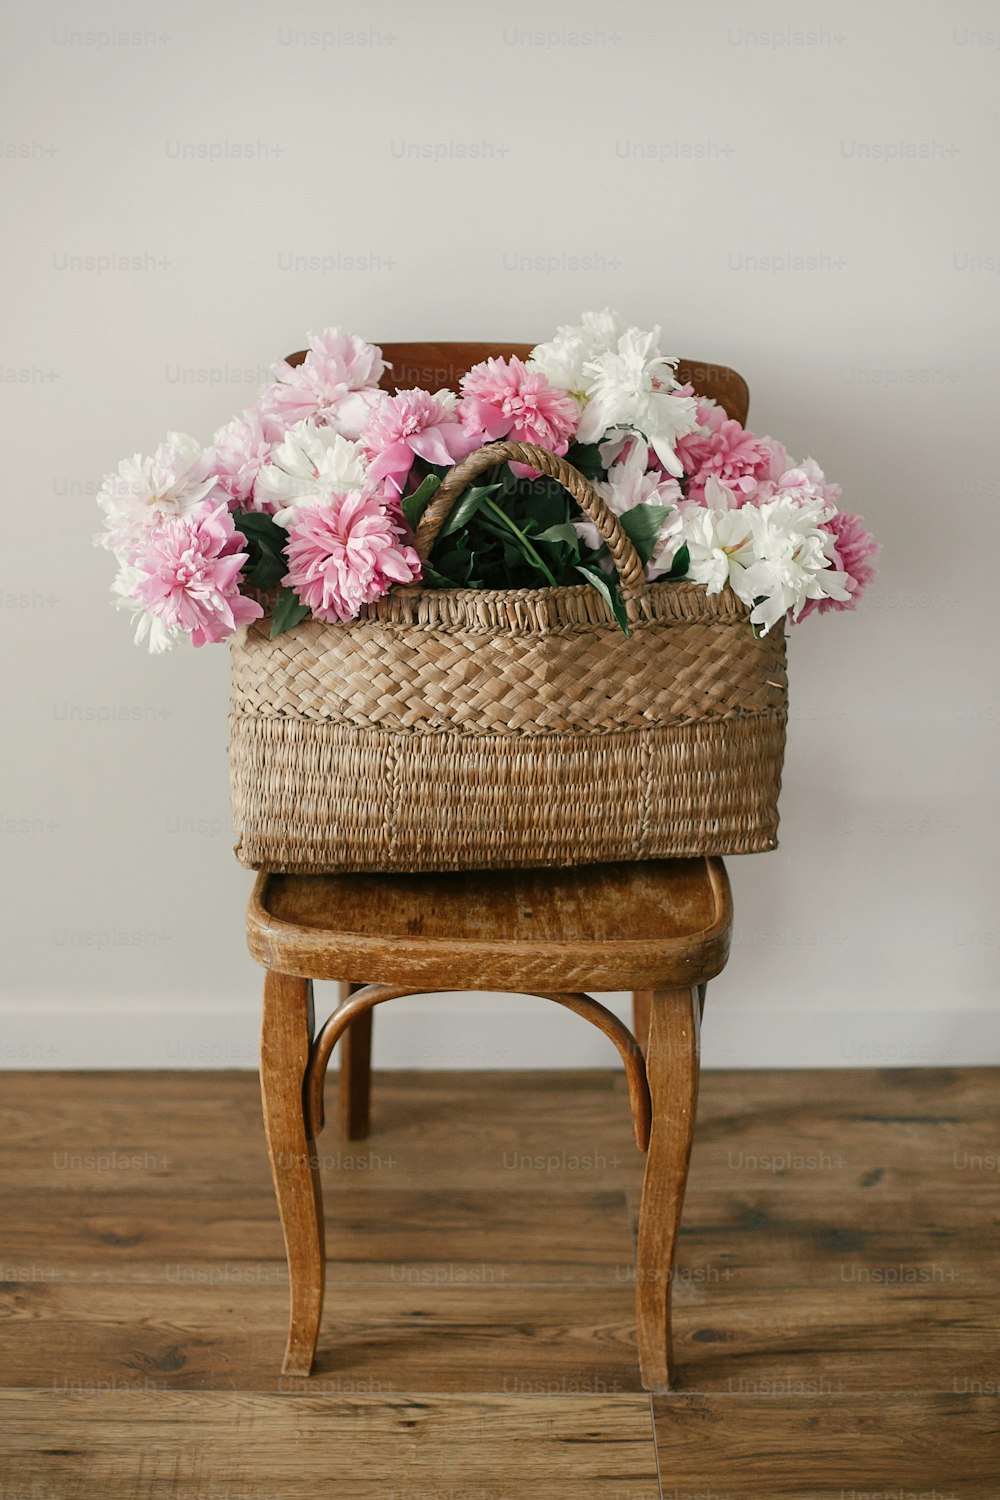 Peônias rosa e brancas elegantes em saco de palha na cadeira rústica de madeira no quarto. Dia Internacional da Mulher. Feliz dia das mães. Olá primavera. Lindo buquê. Vida rural